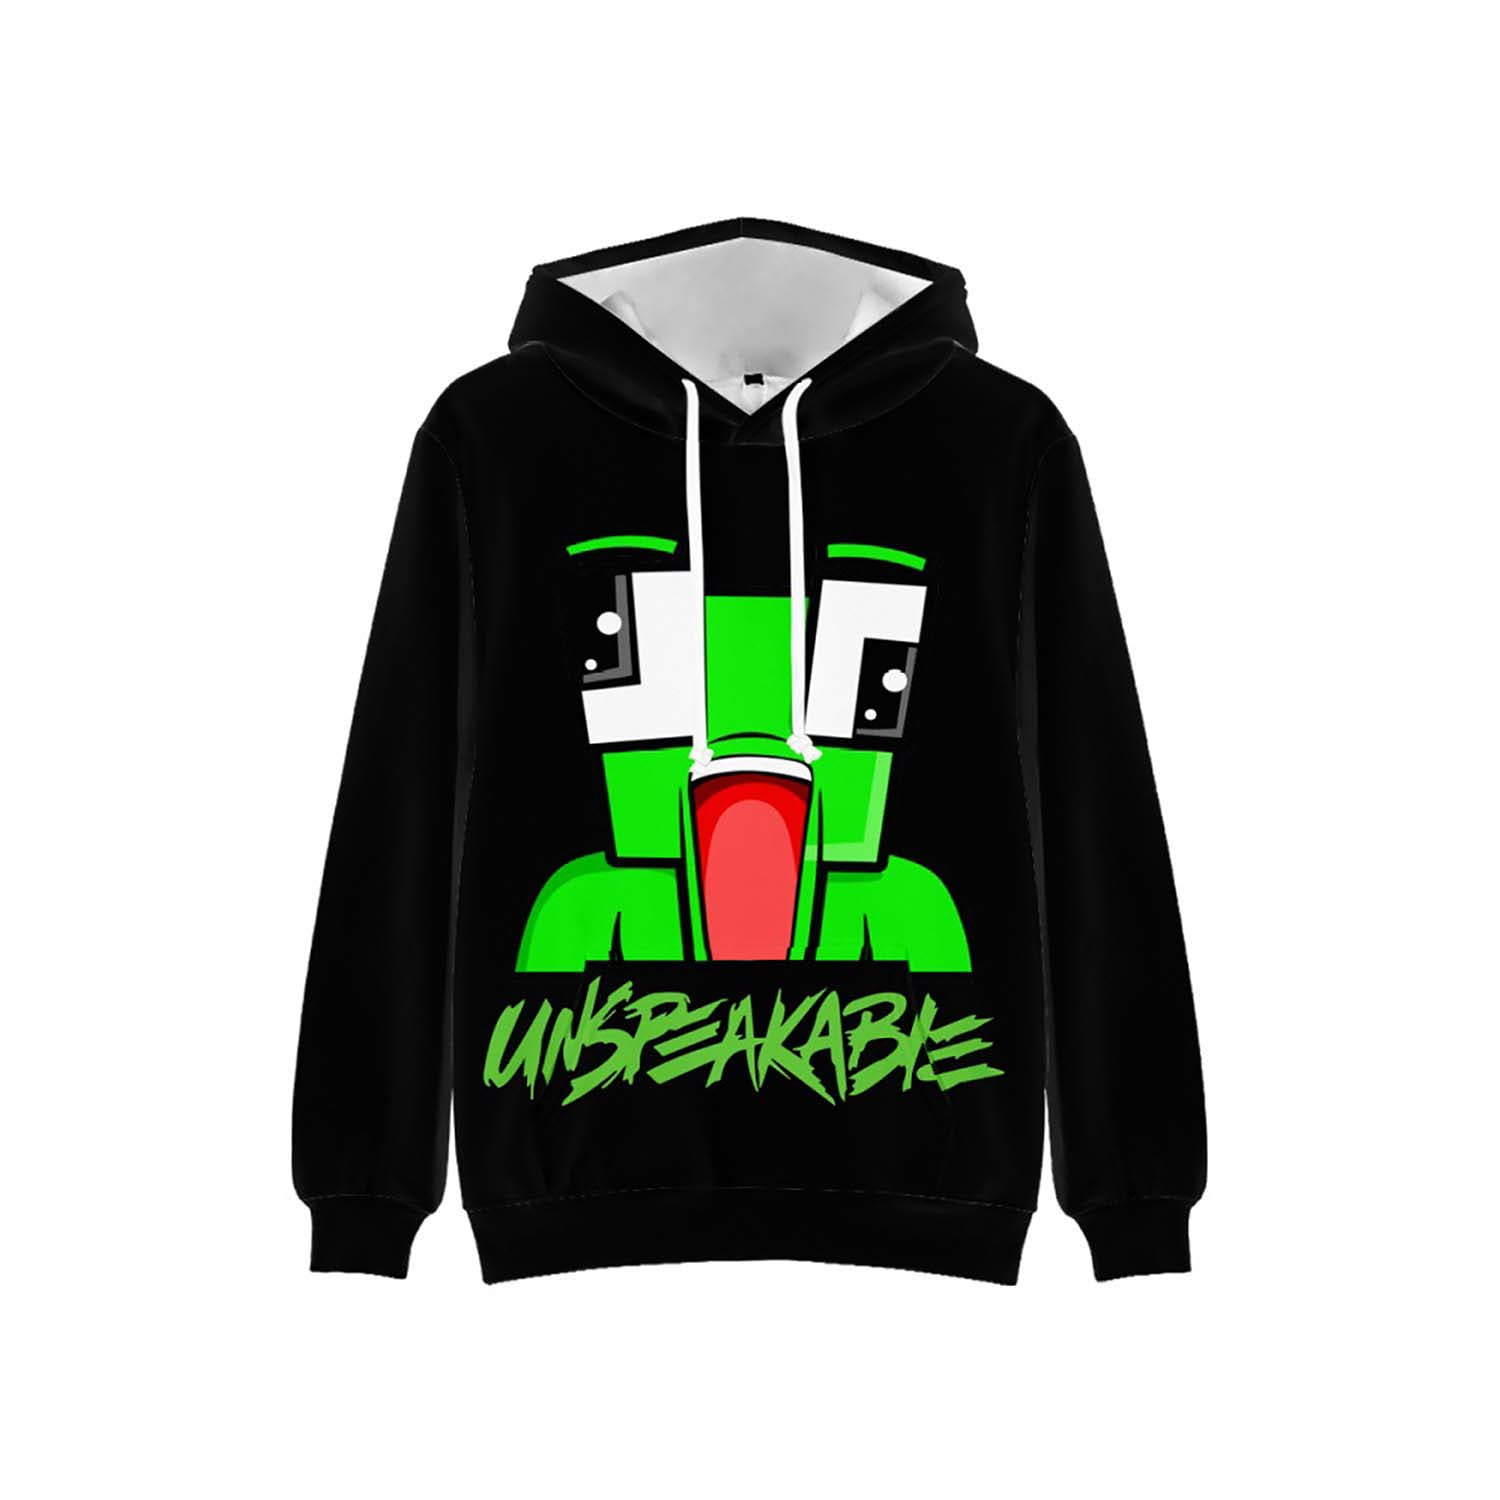 UNSPEAKABLE Hoodies Kids Boys Casual Hooded Long Sleeve Jumper Sweatshirt Tops 